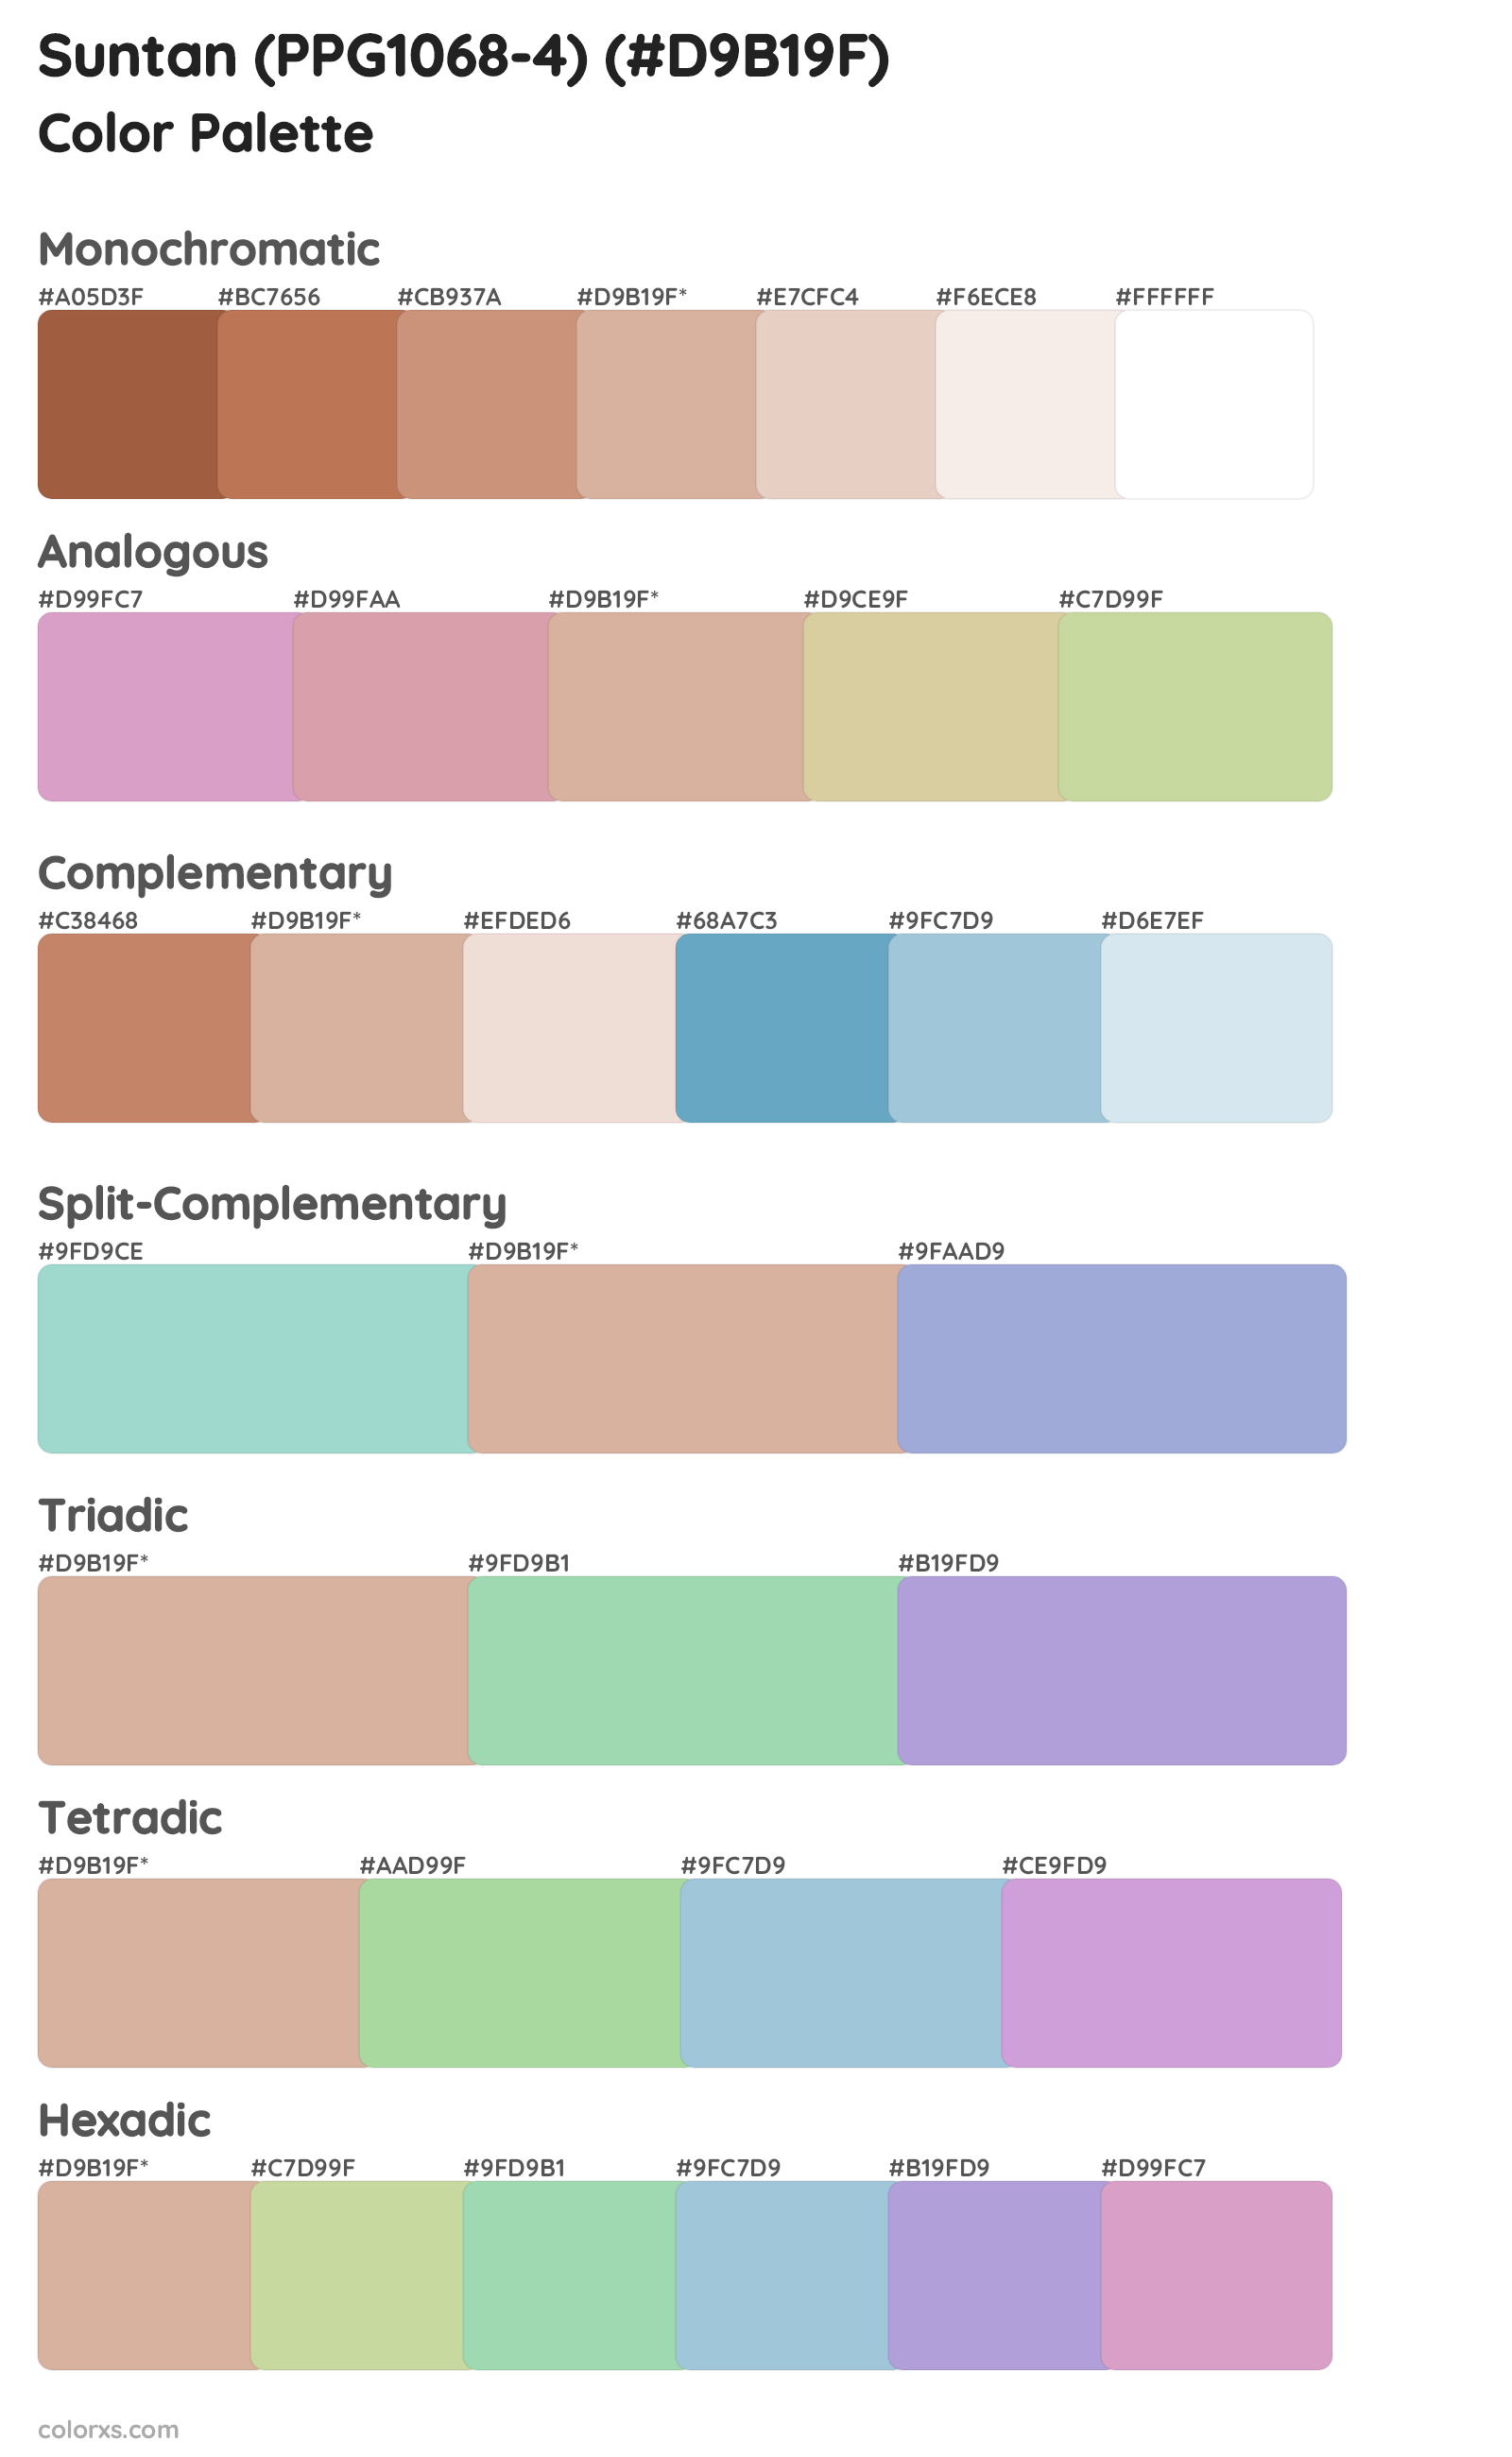 Suntan (PPG1068-4) Color Scheme Palettes